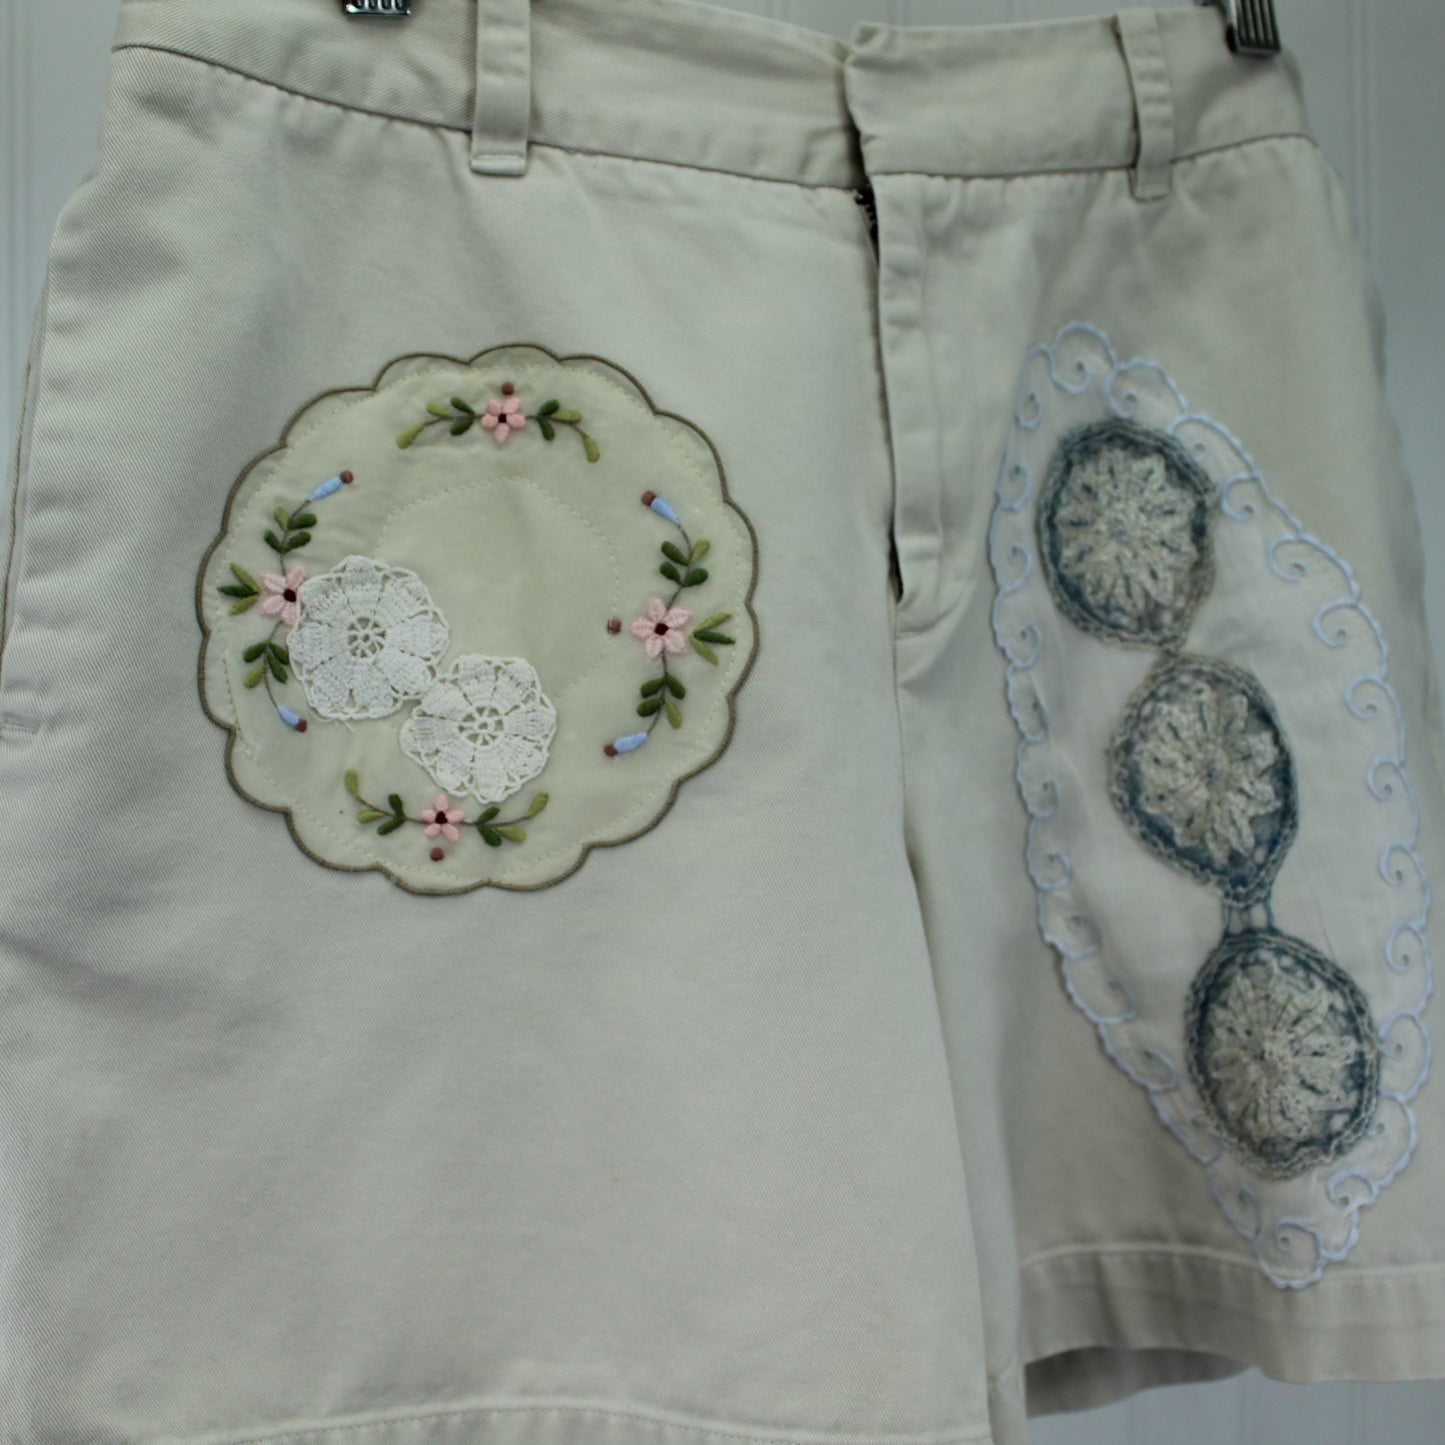 GAP Cotton Khaki Short Pants Patzi Design Enhanced Embroidery Crochet frou frou on the pants front